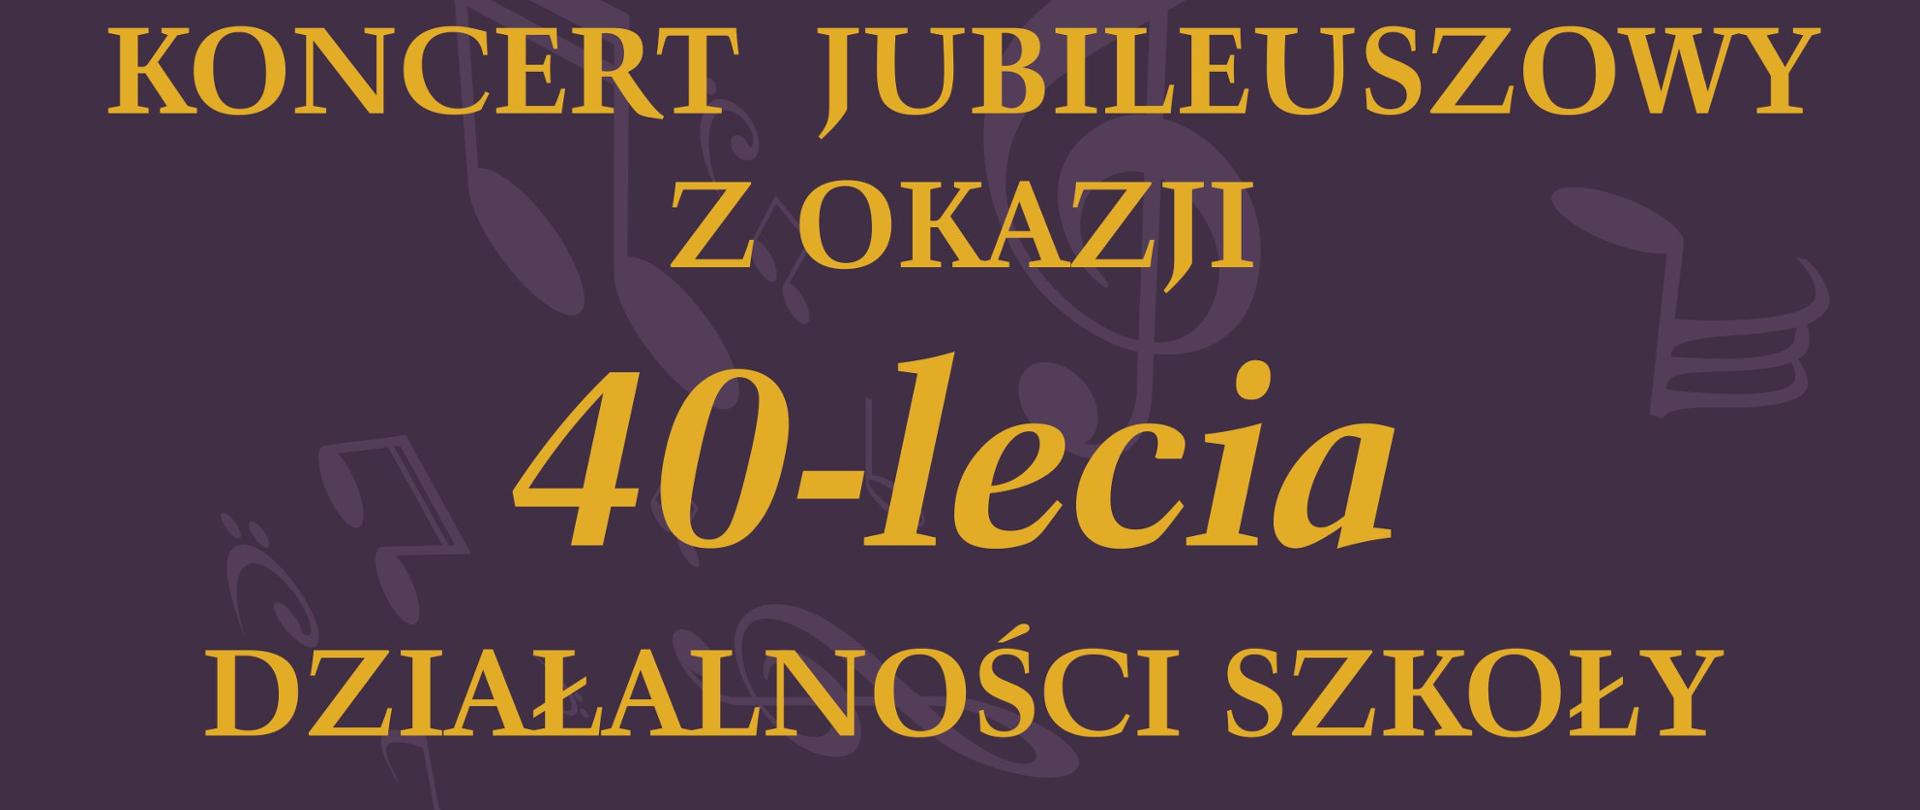 Plakat jubileuszu 40 lecia PSM I st. w Biłgoraju. Koncert z okazji jubileuszu 40 lecia działalności szkoły. 7 czerwca godz. 11:00. Sala PSM I st. w Biłgoraju. Tło plakatu granatowe.